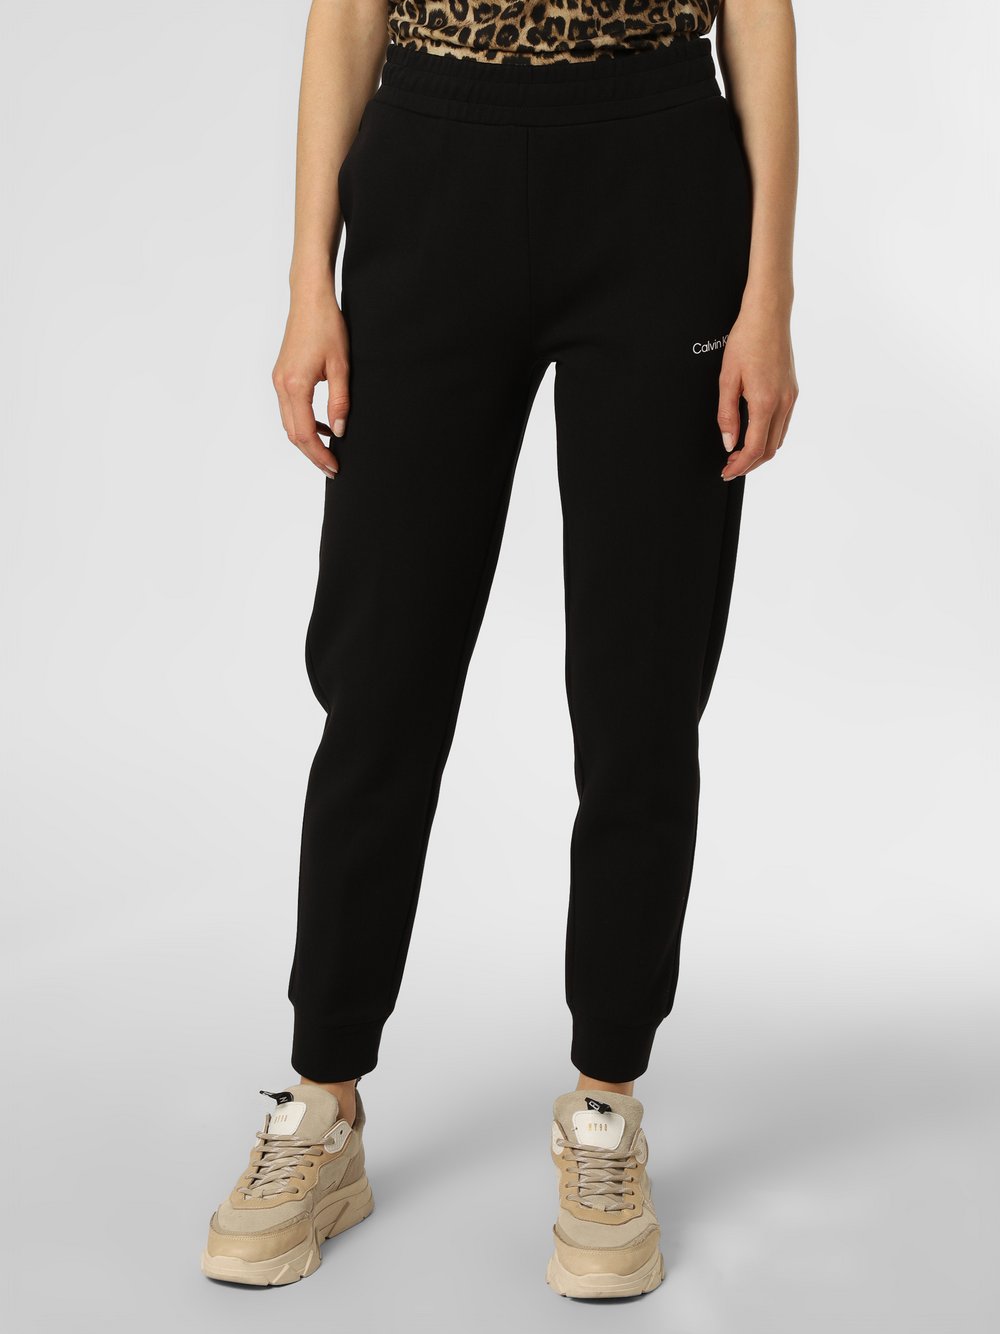 Calvin Klein - Damskie spodnie dresowe, czarny